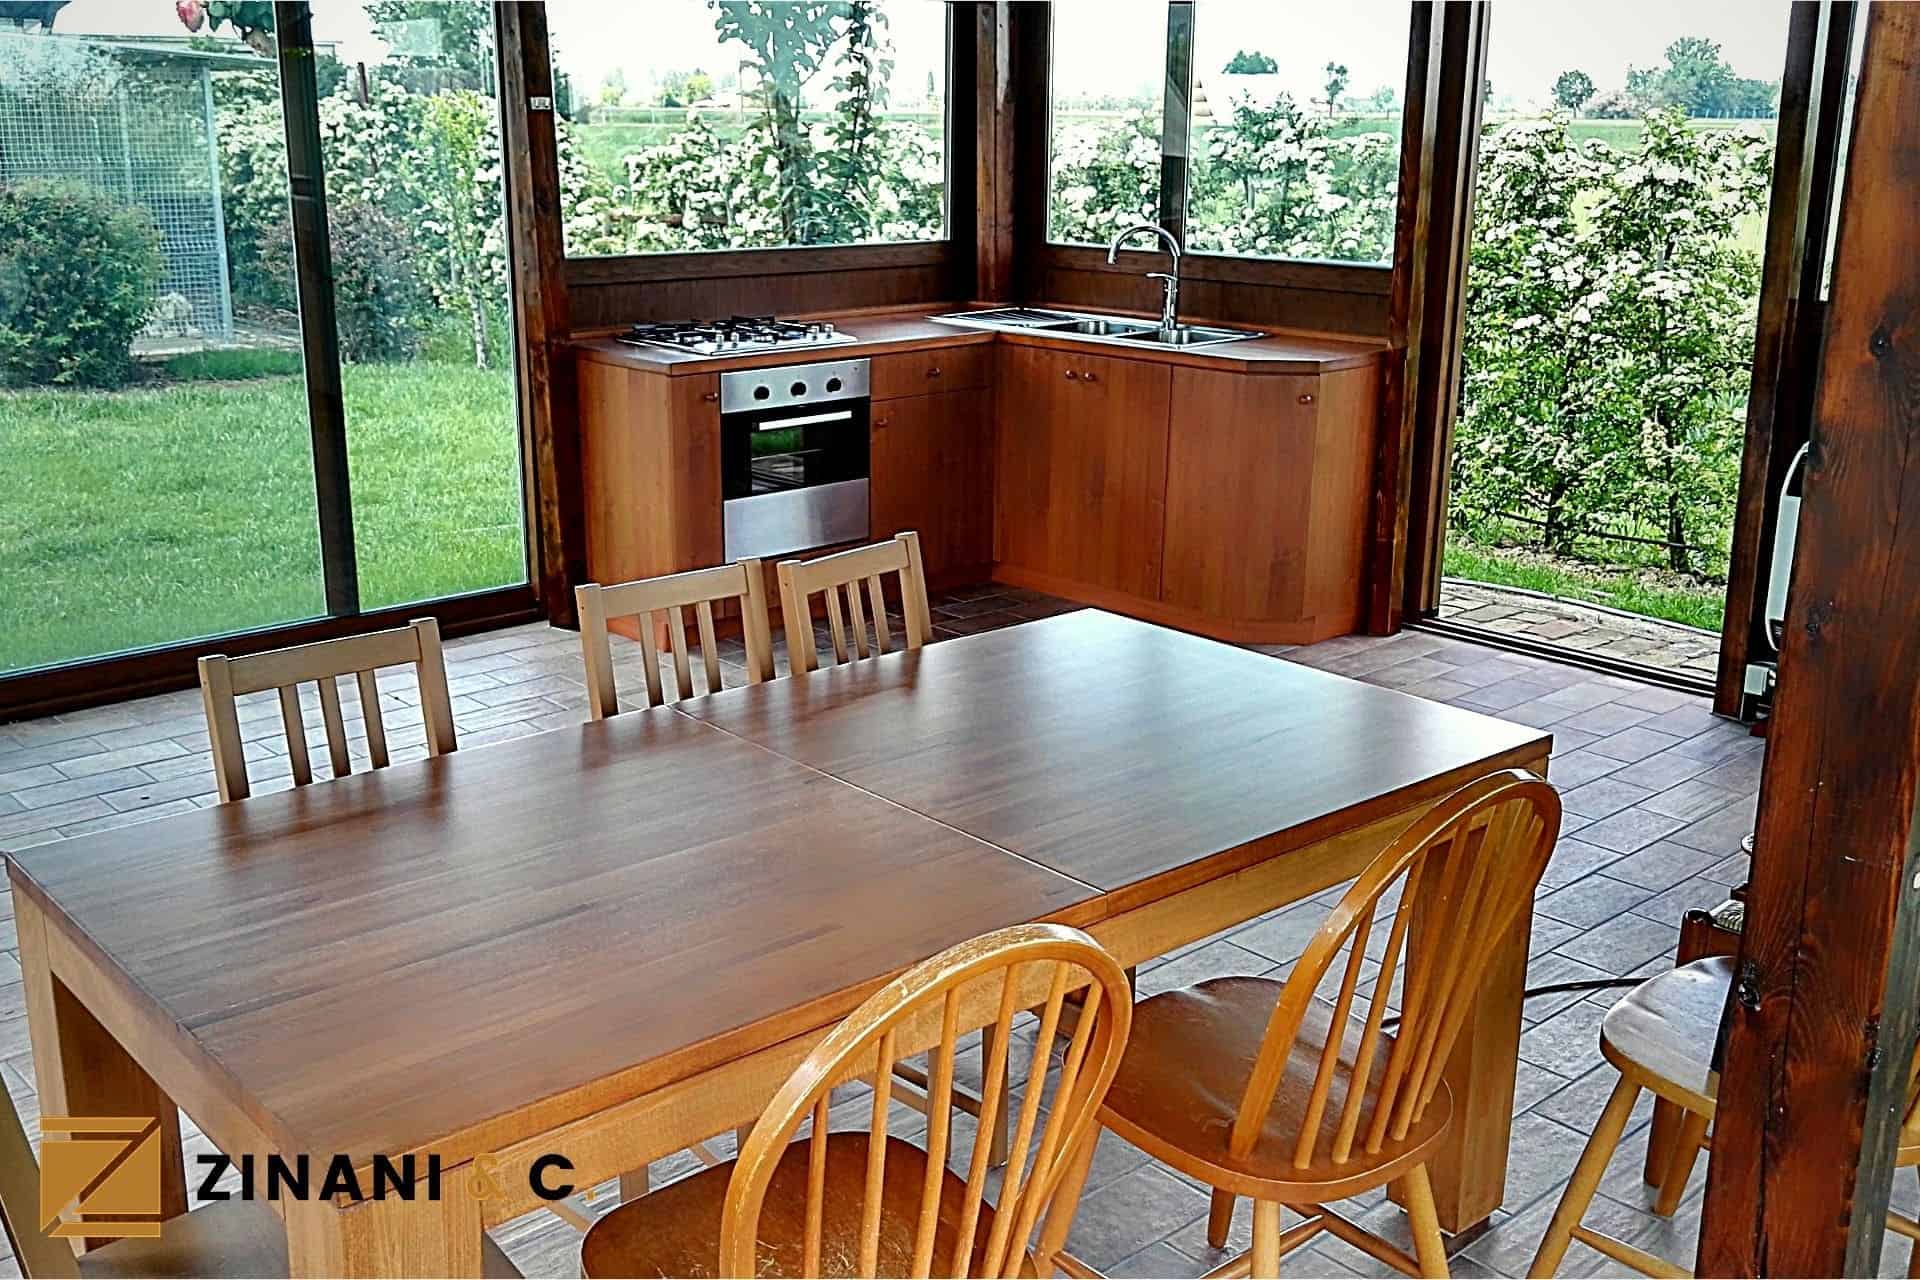 You are currently viewing Arredare un gazebo: tavolo in legno e cucina su misura